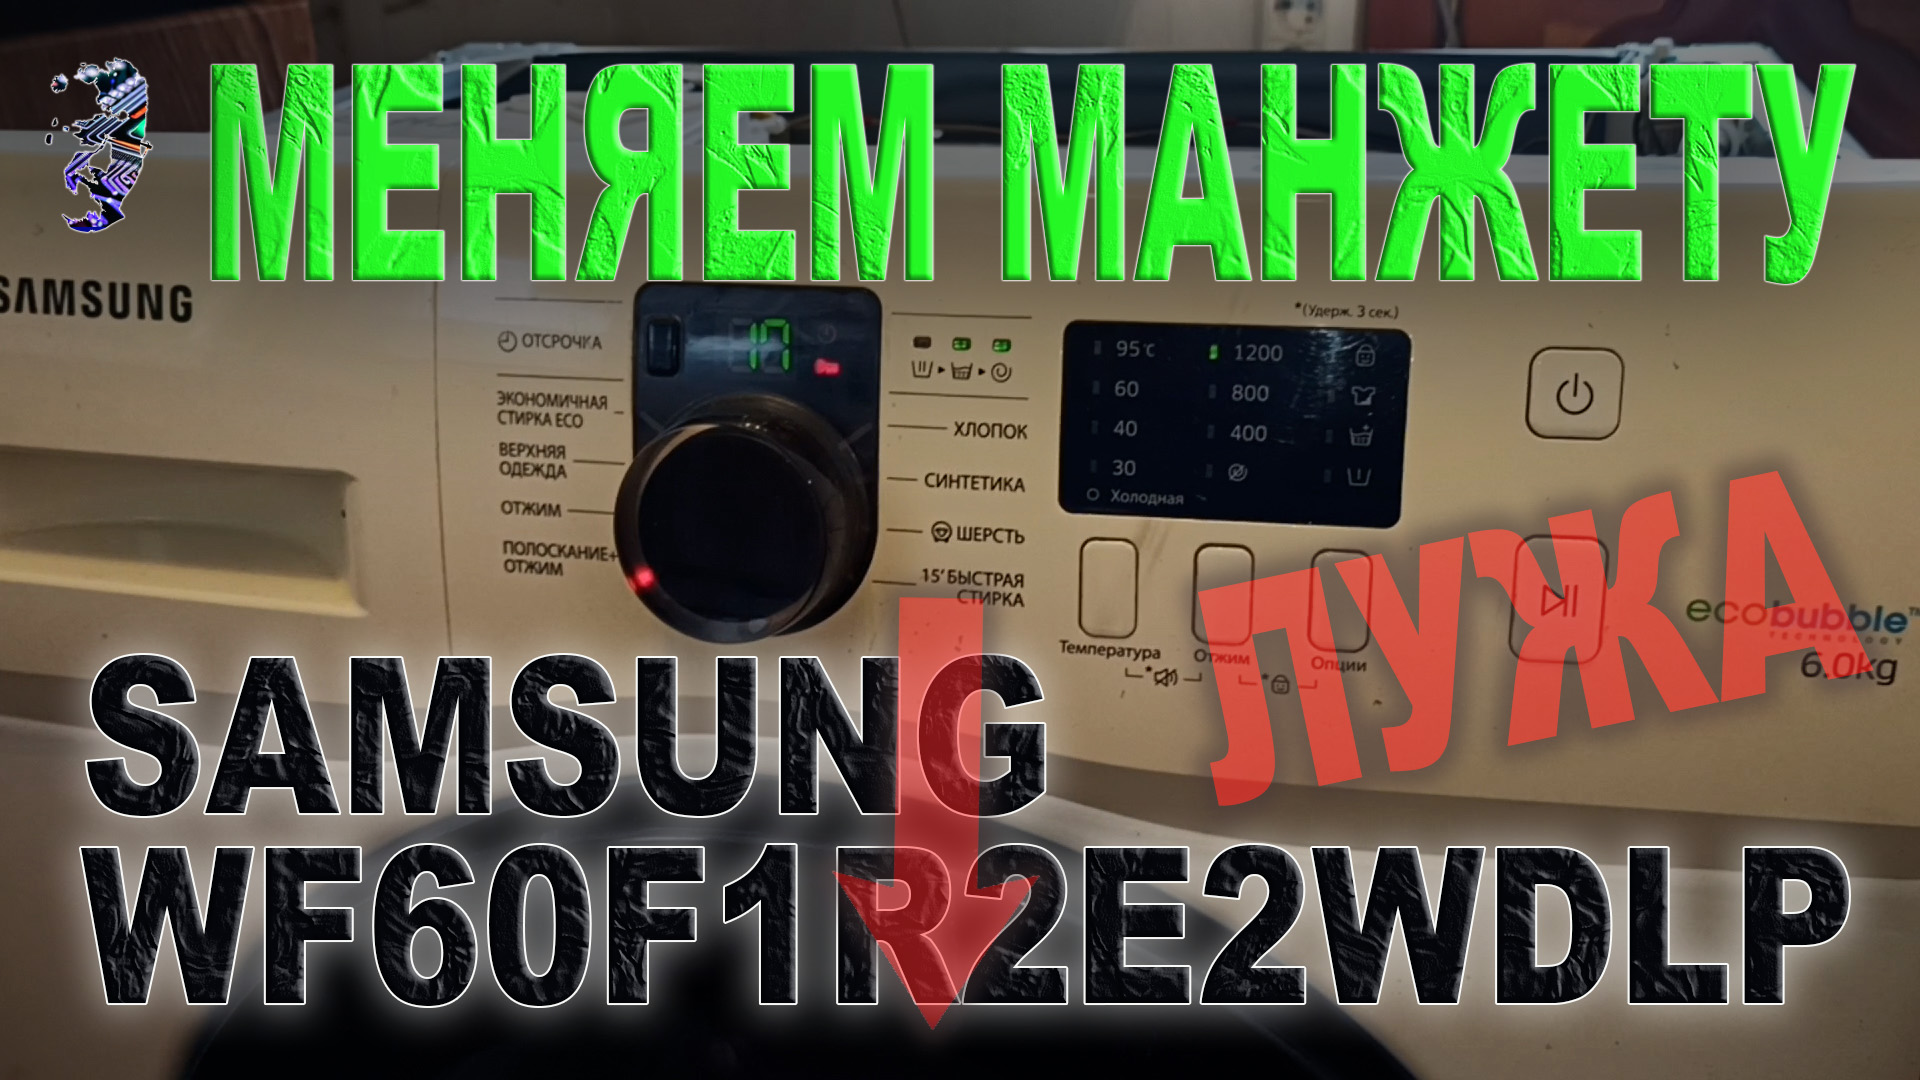 Ремонт стиральной машины Samsung WF60F1R2E2WDLP 01, протекает